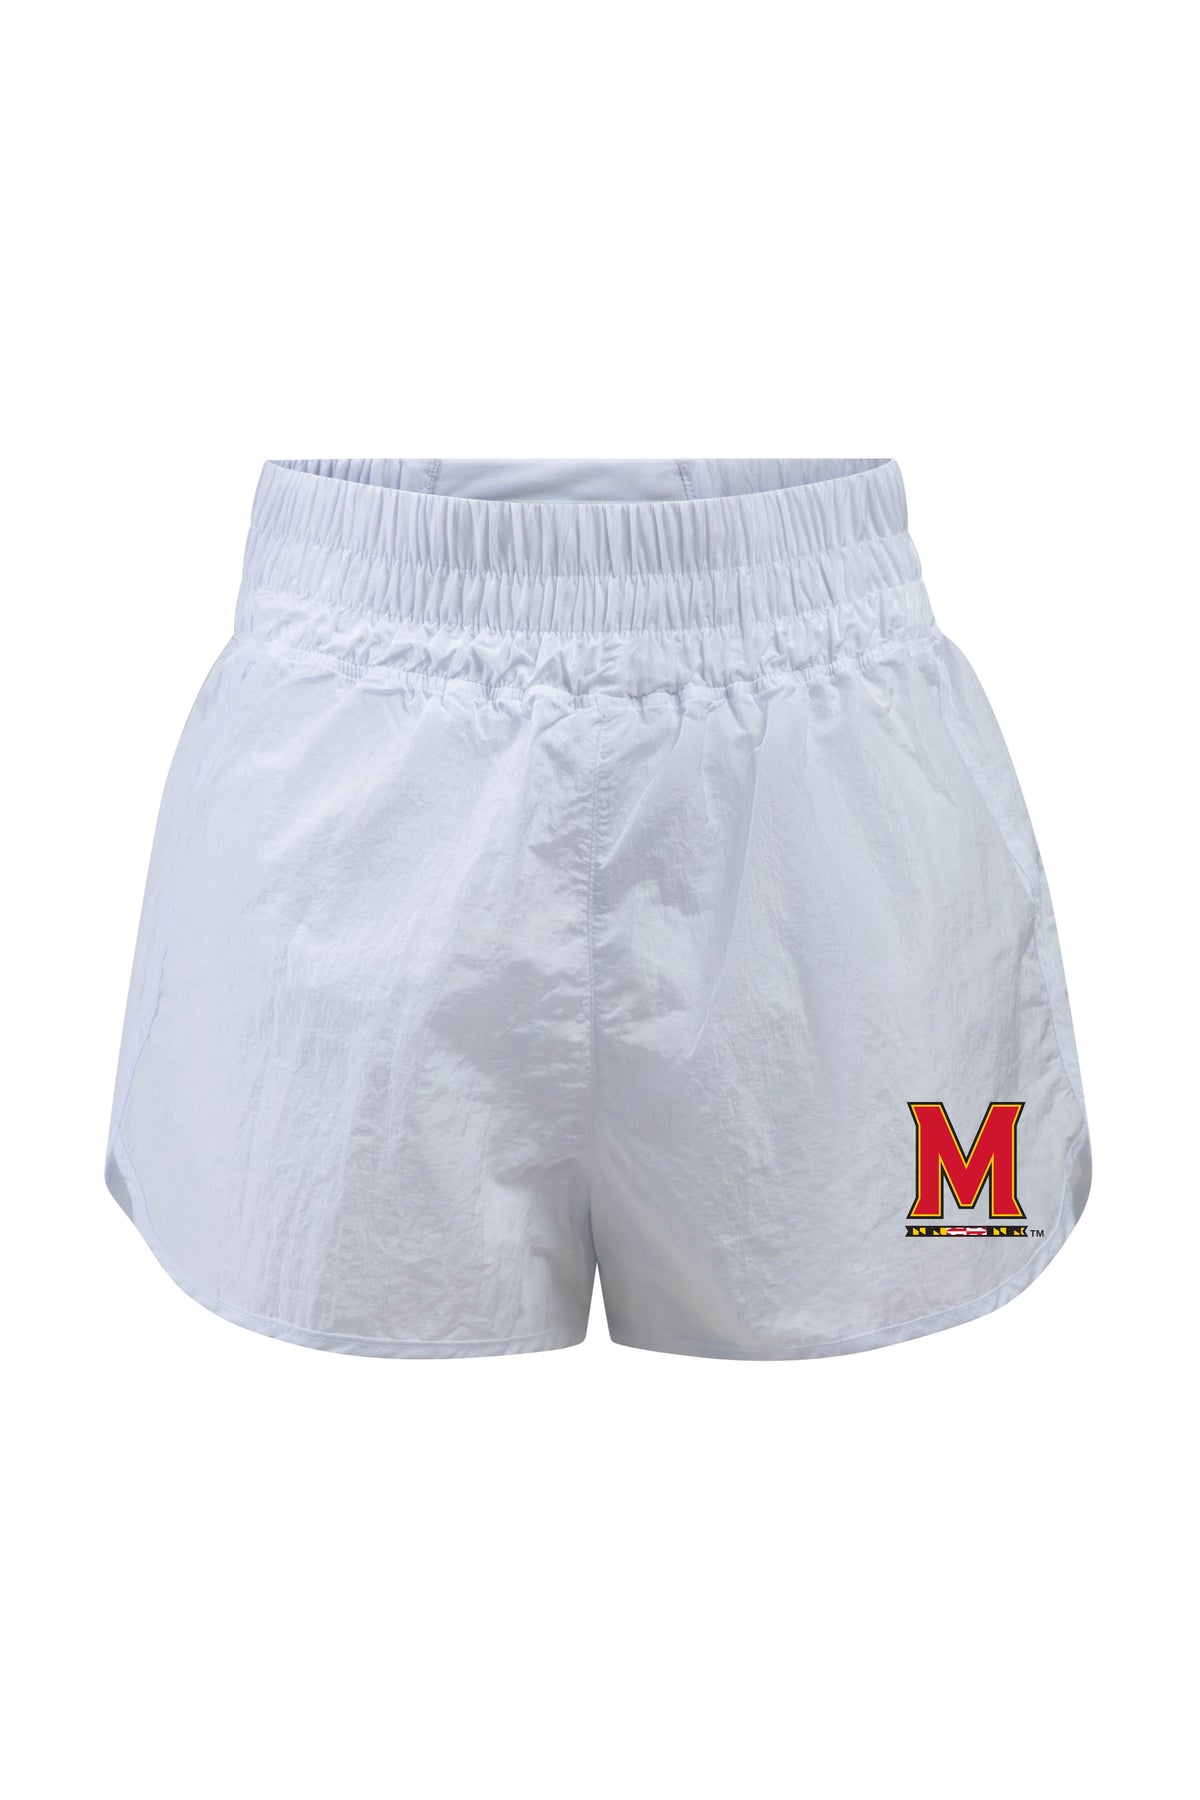 University of Maryland Boxer Short